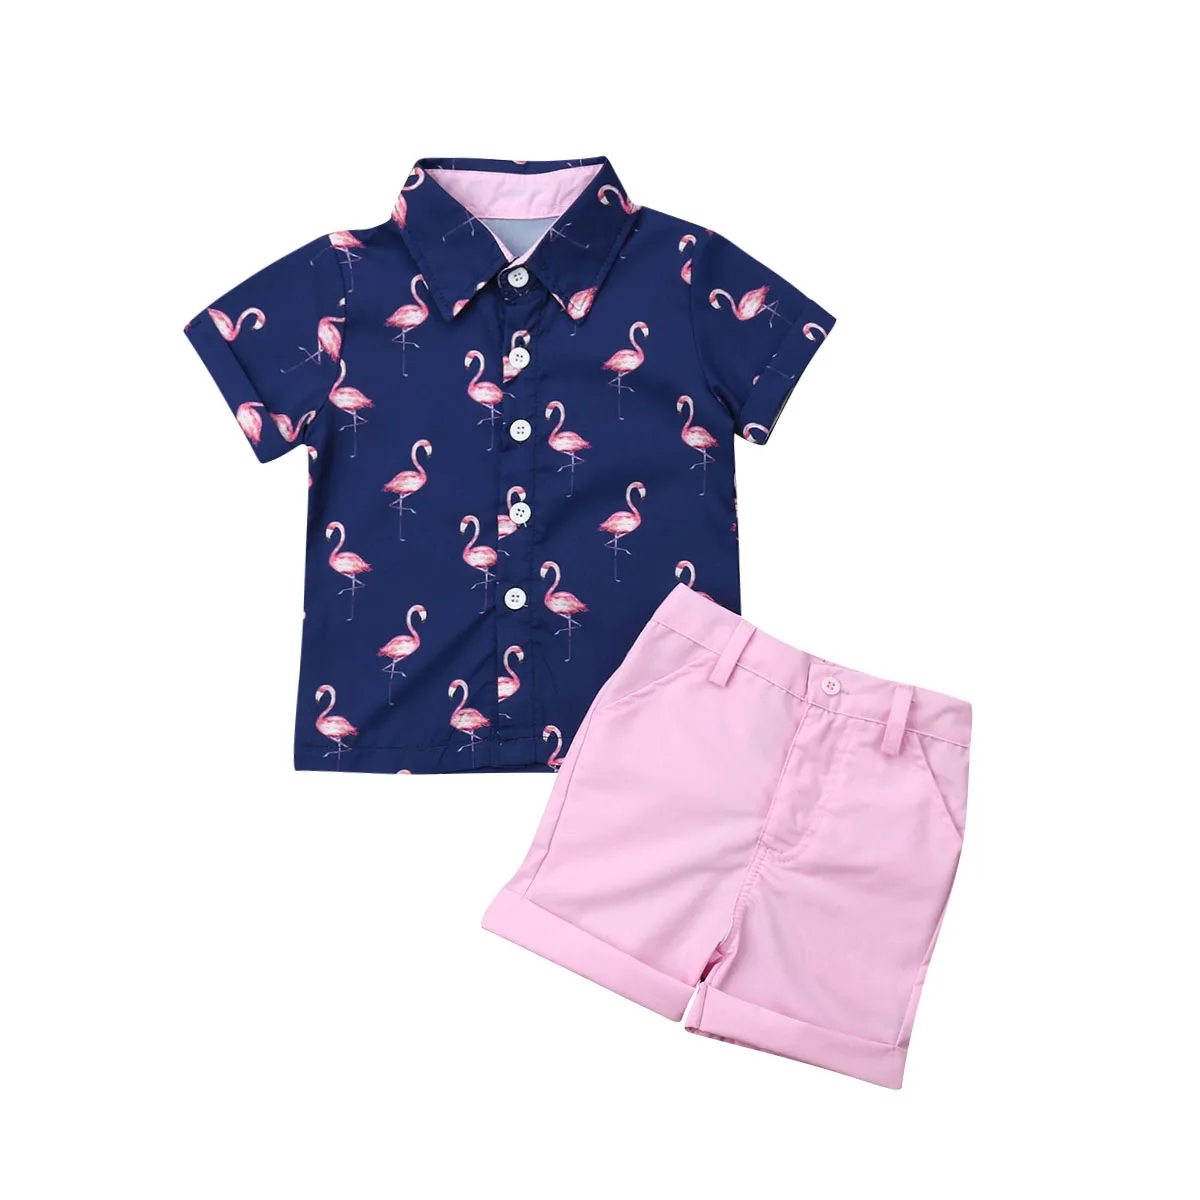 От 1 до 6 лет для маленьких мальчиков; летние топы с Фламинго; футболка и шорты; комплект одежды из 2 предметов - Цвет: Синий